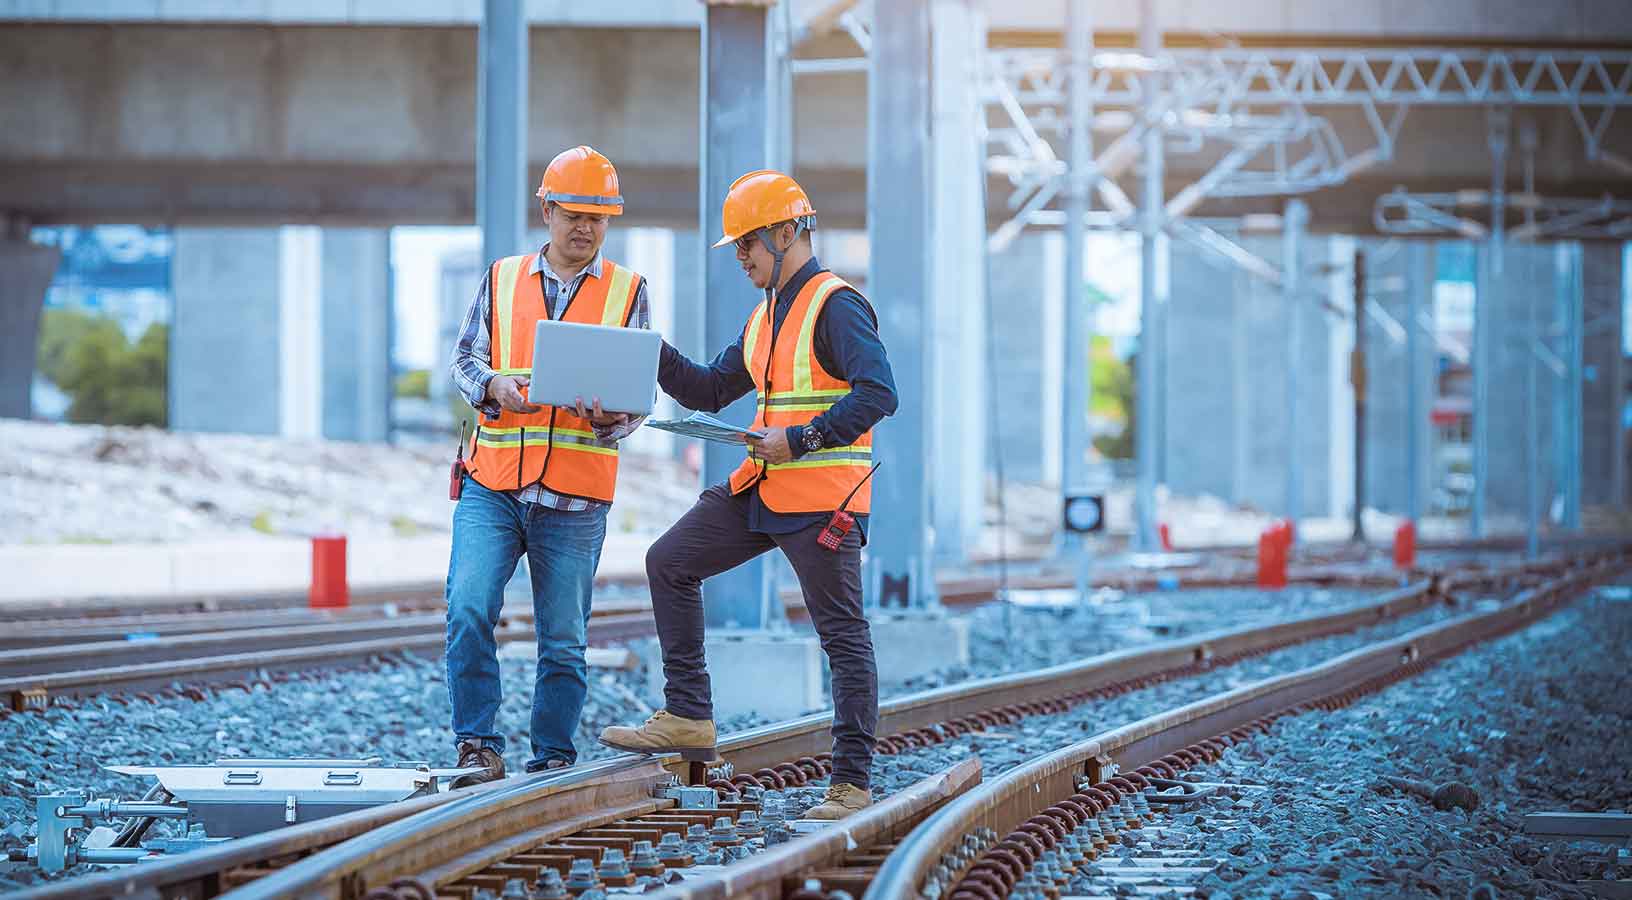 Engenheiro em uma discussão de inspeção e verificando o processo de construção, comutador ferroviário e tarefas em estação ferroviária. Engenheiro usando capacete e uniforme de segurança no trabalho.